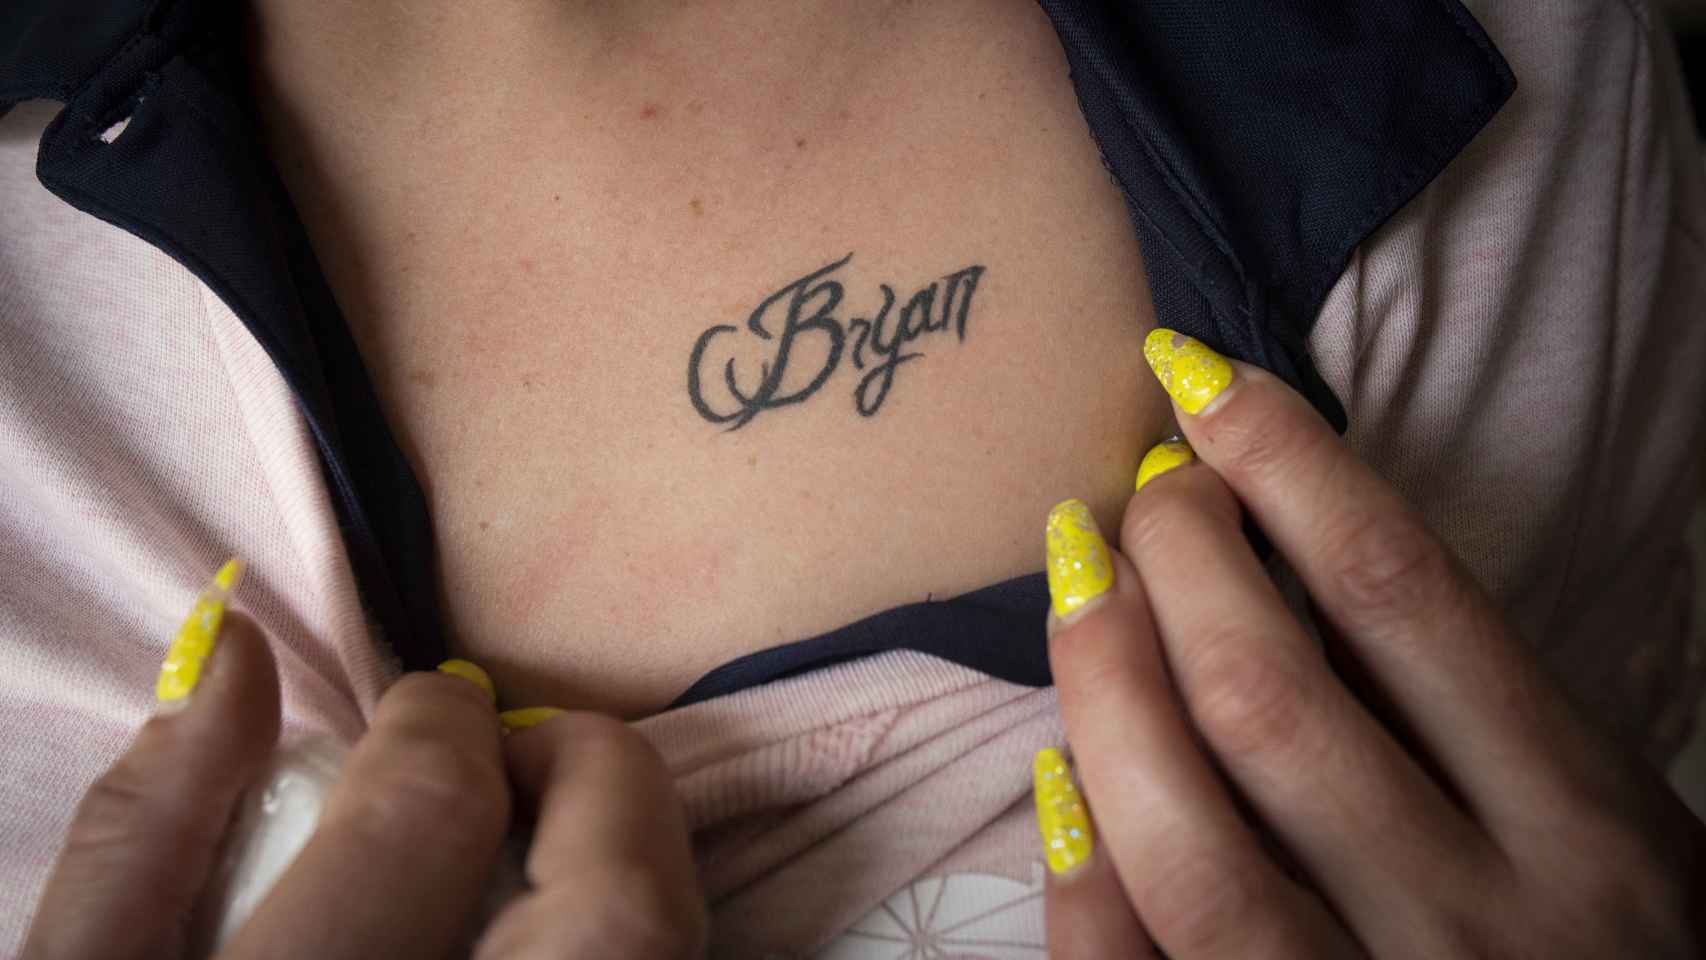 Más de 20 personas se han tatuado el nombre de Brian en el pecho.